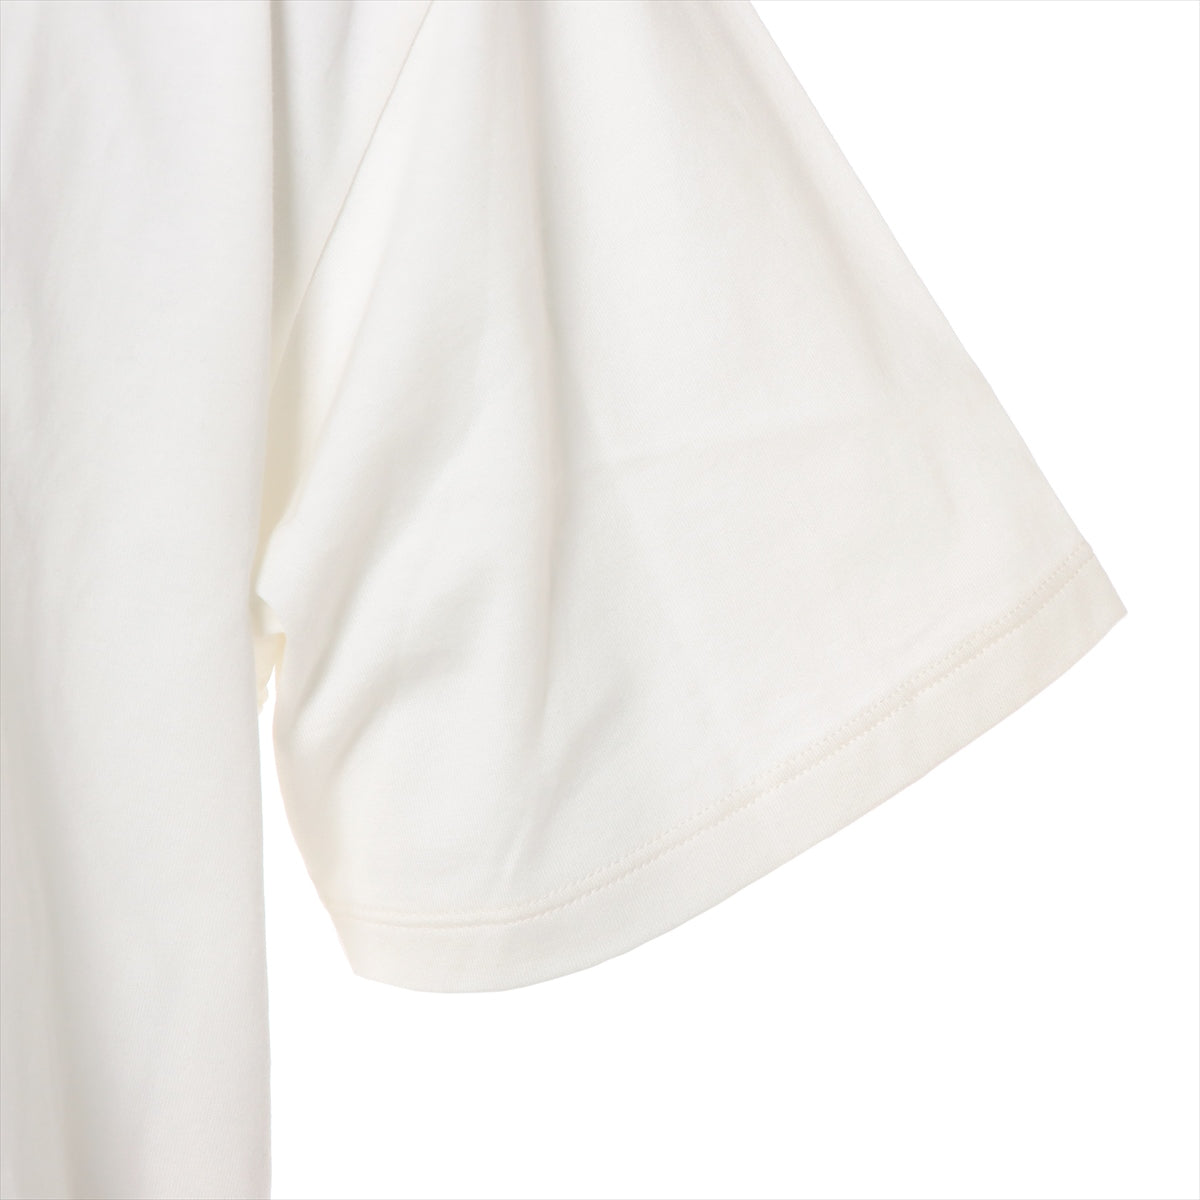 セリーヌ エディ期 コットン Tシャツ L メンズ ホワイト  2X47F671Q ラインストーン